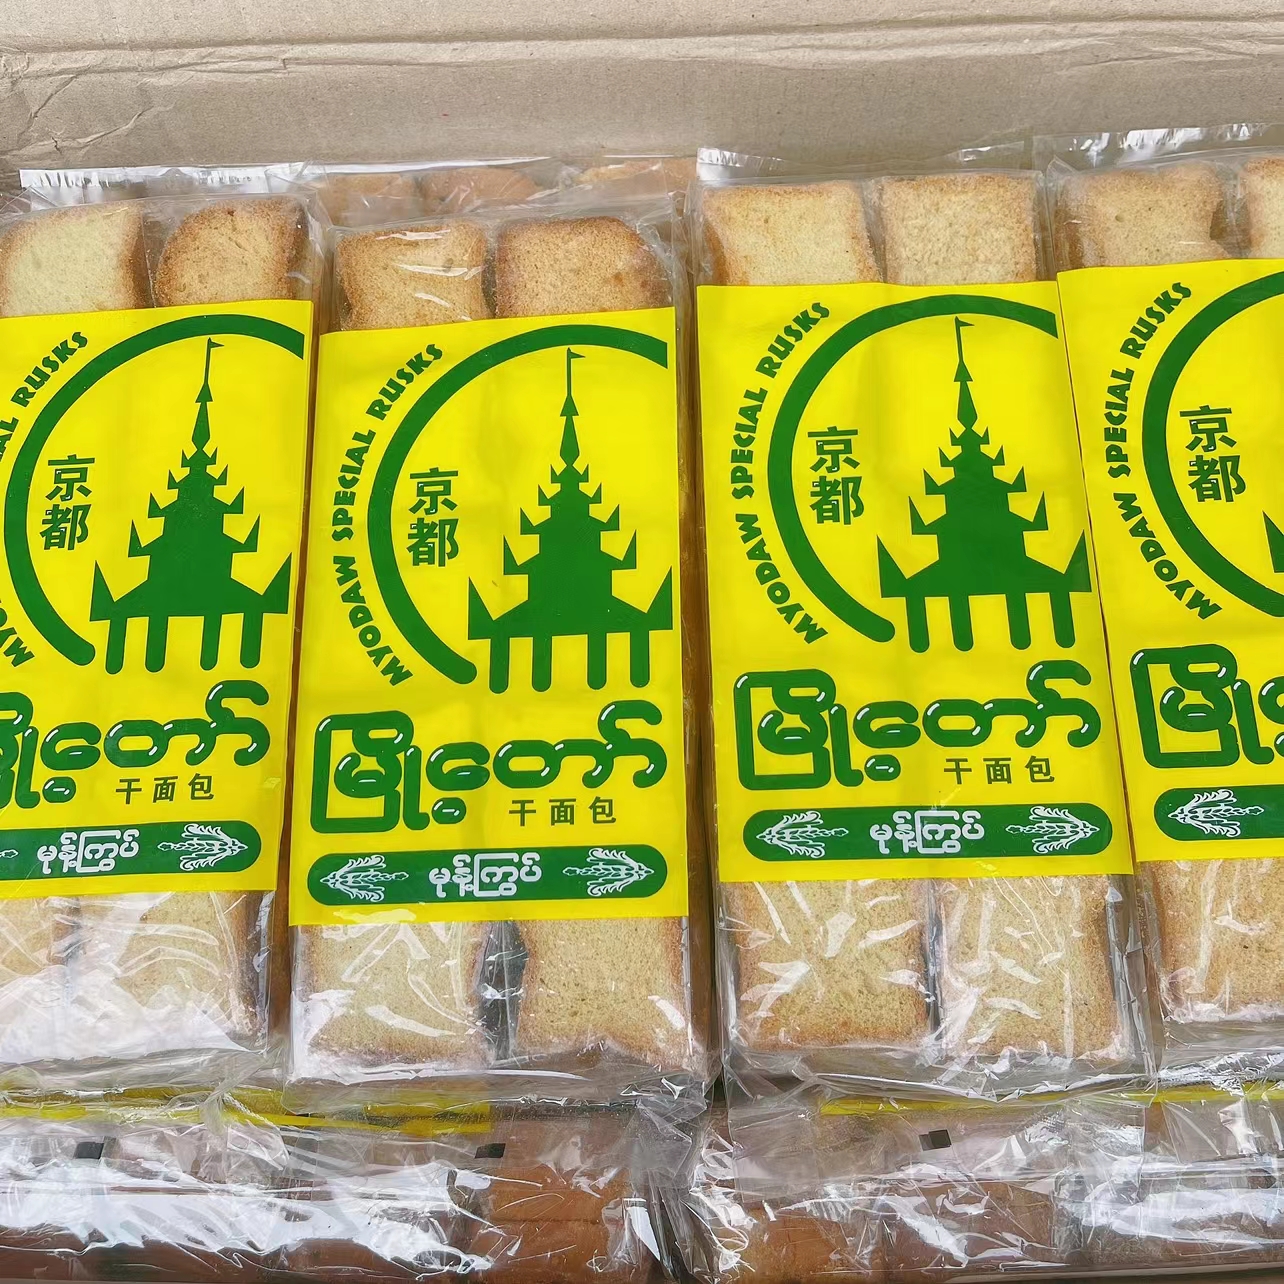 好吃缅甸京都干面包干大老板泡鲁达材料干面包古茗冷饮面包块30片